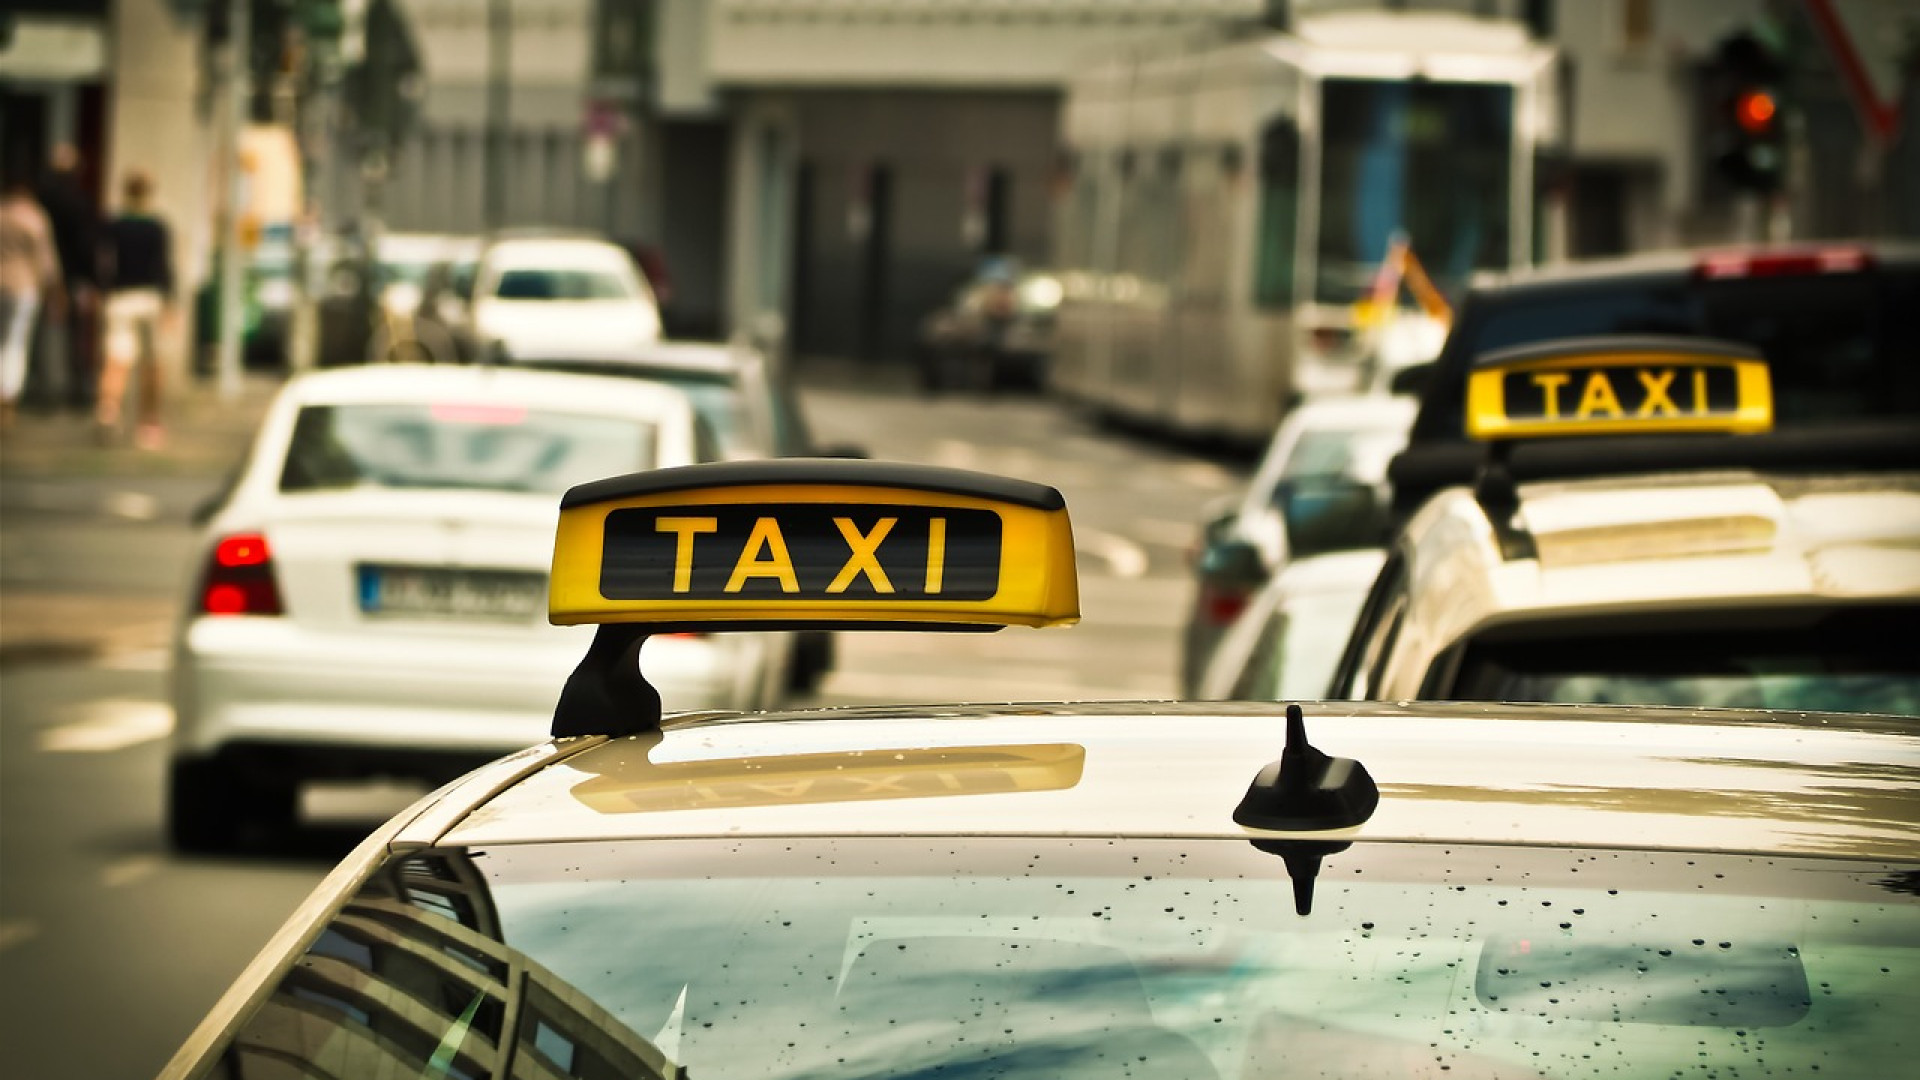 Réserver un taxi pour vous déplacer facilement lors de vos vacances